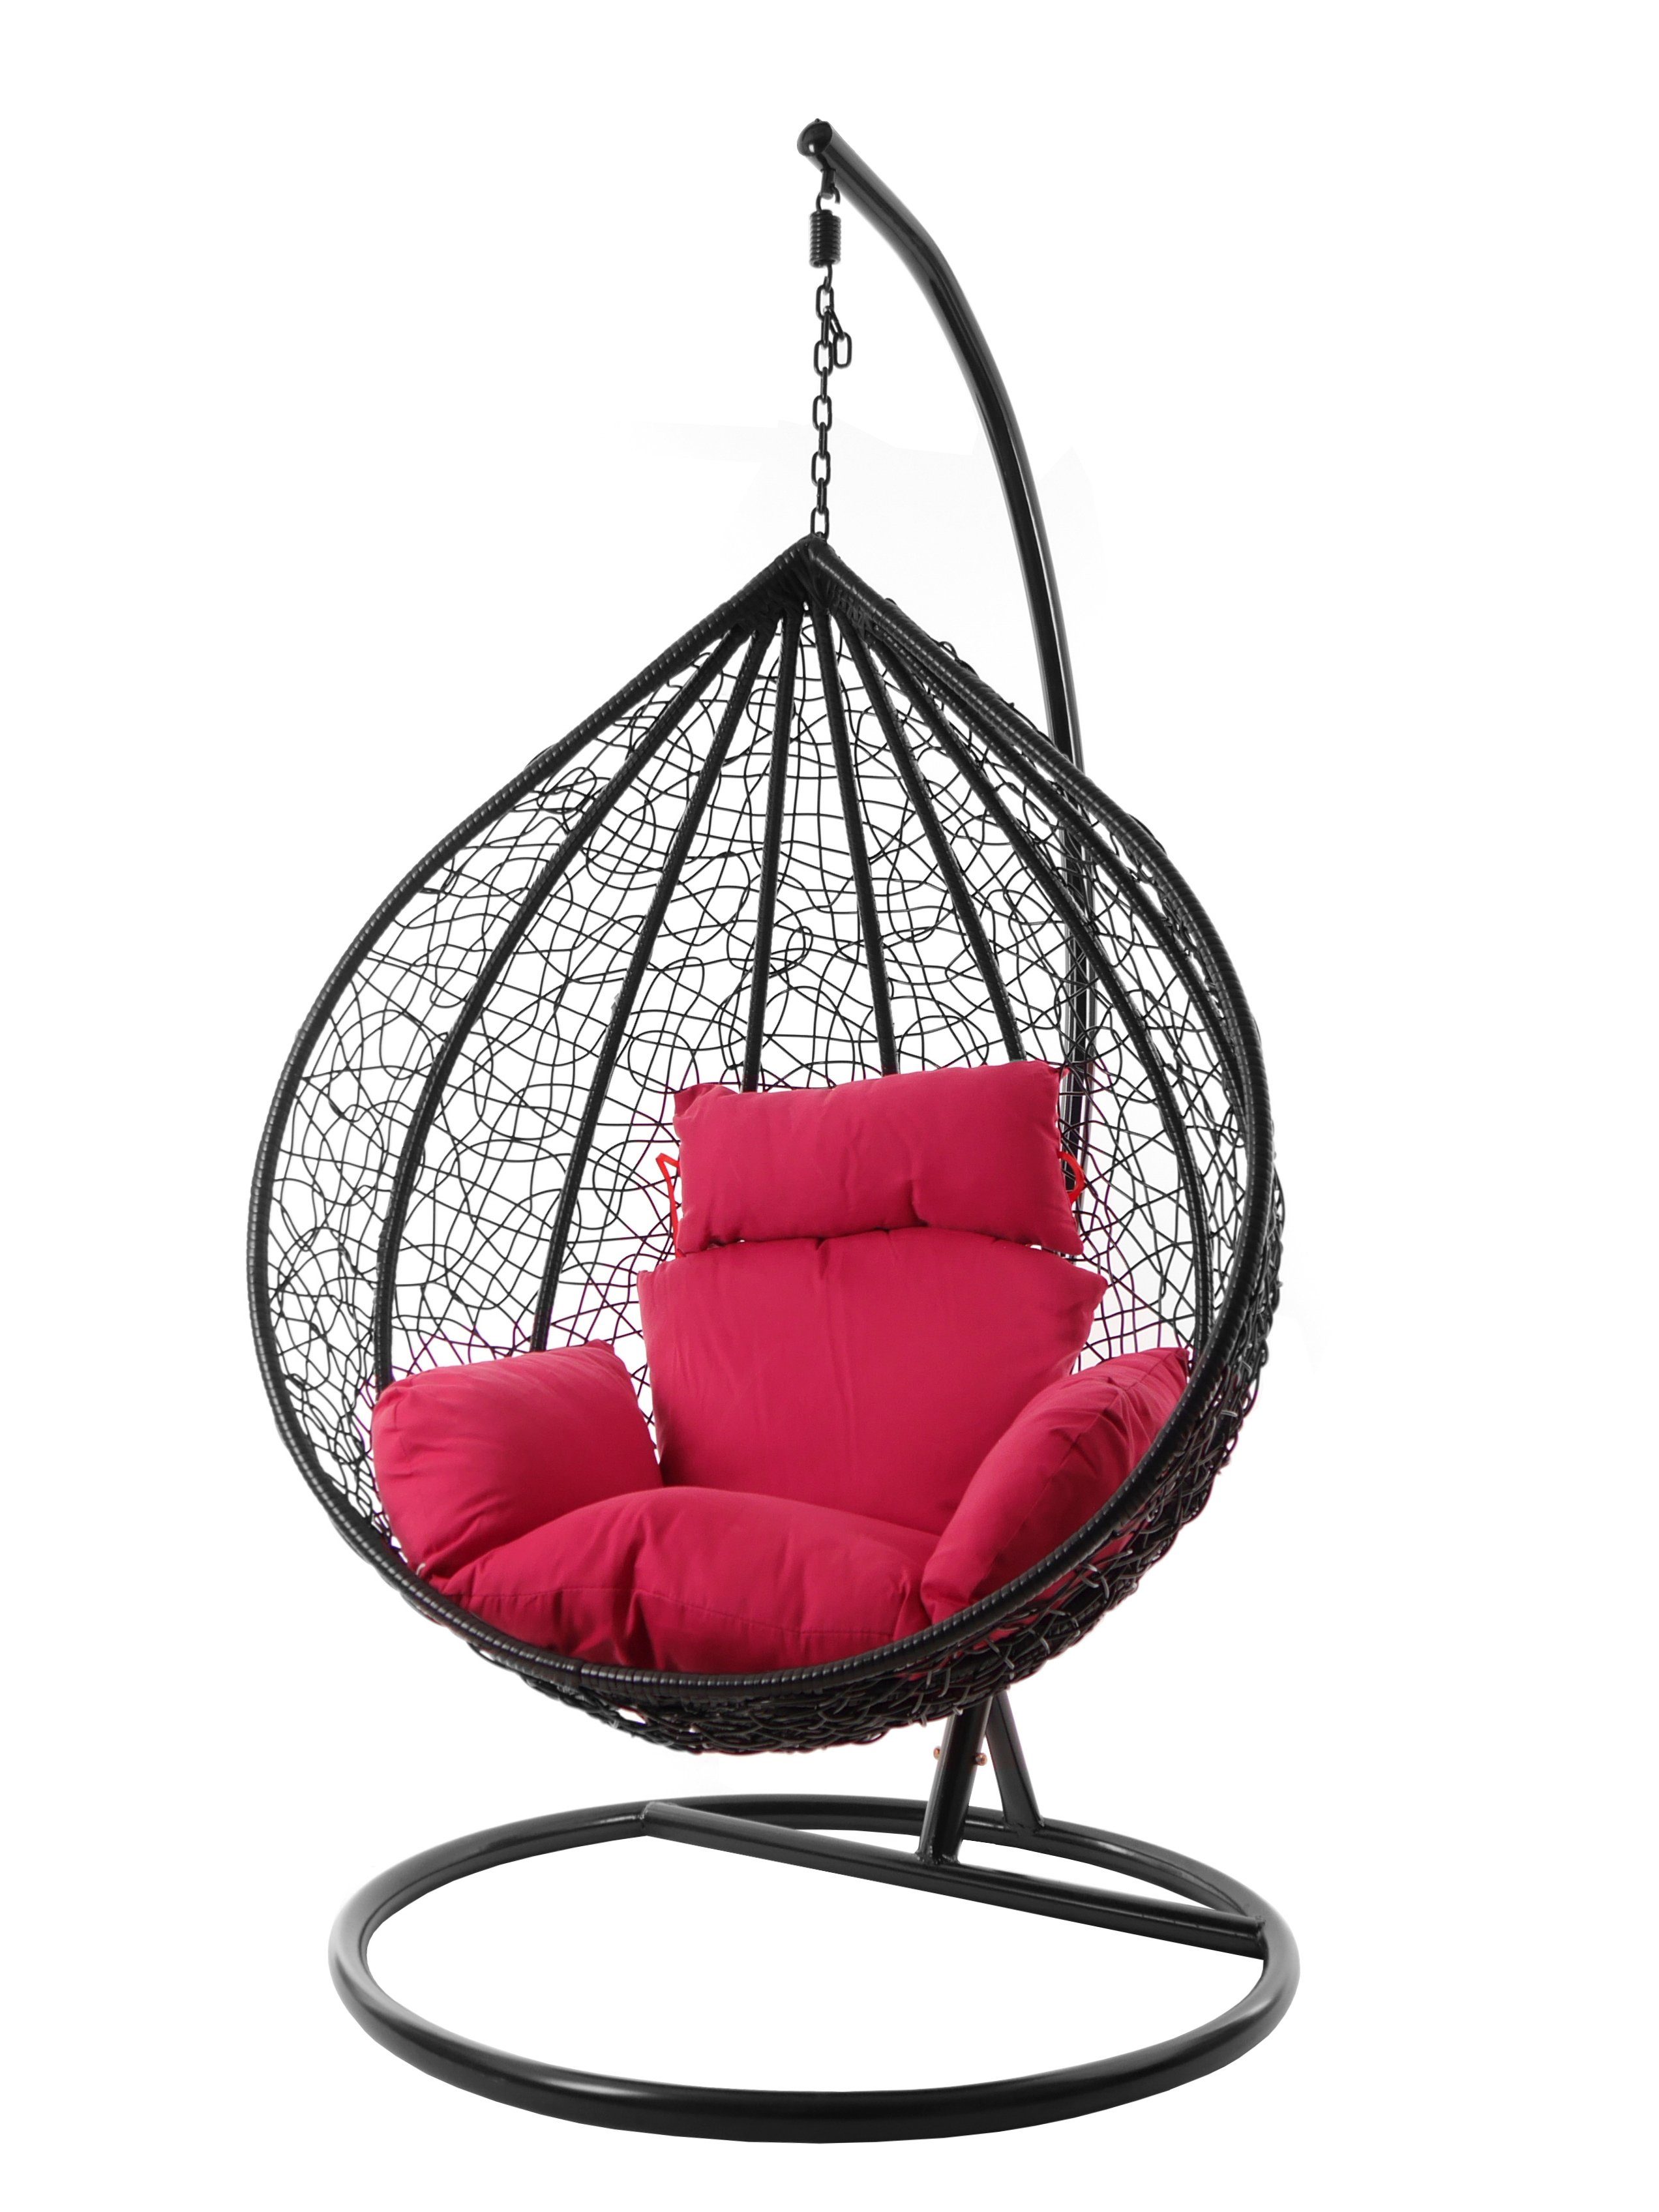 KIDEO Hängesessel Hängesessel MANACOR schwarz, XXL Swing Chair, edel, Gestell und Kissen inklusive, Nest-Kissen, verschiedene Farben pink (3333 hot pink)